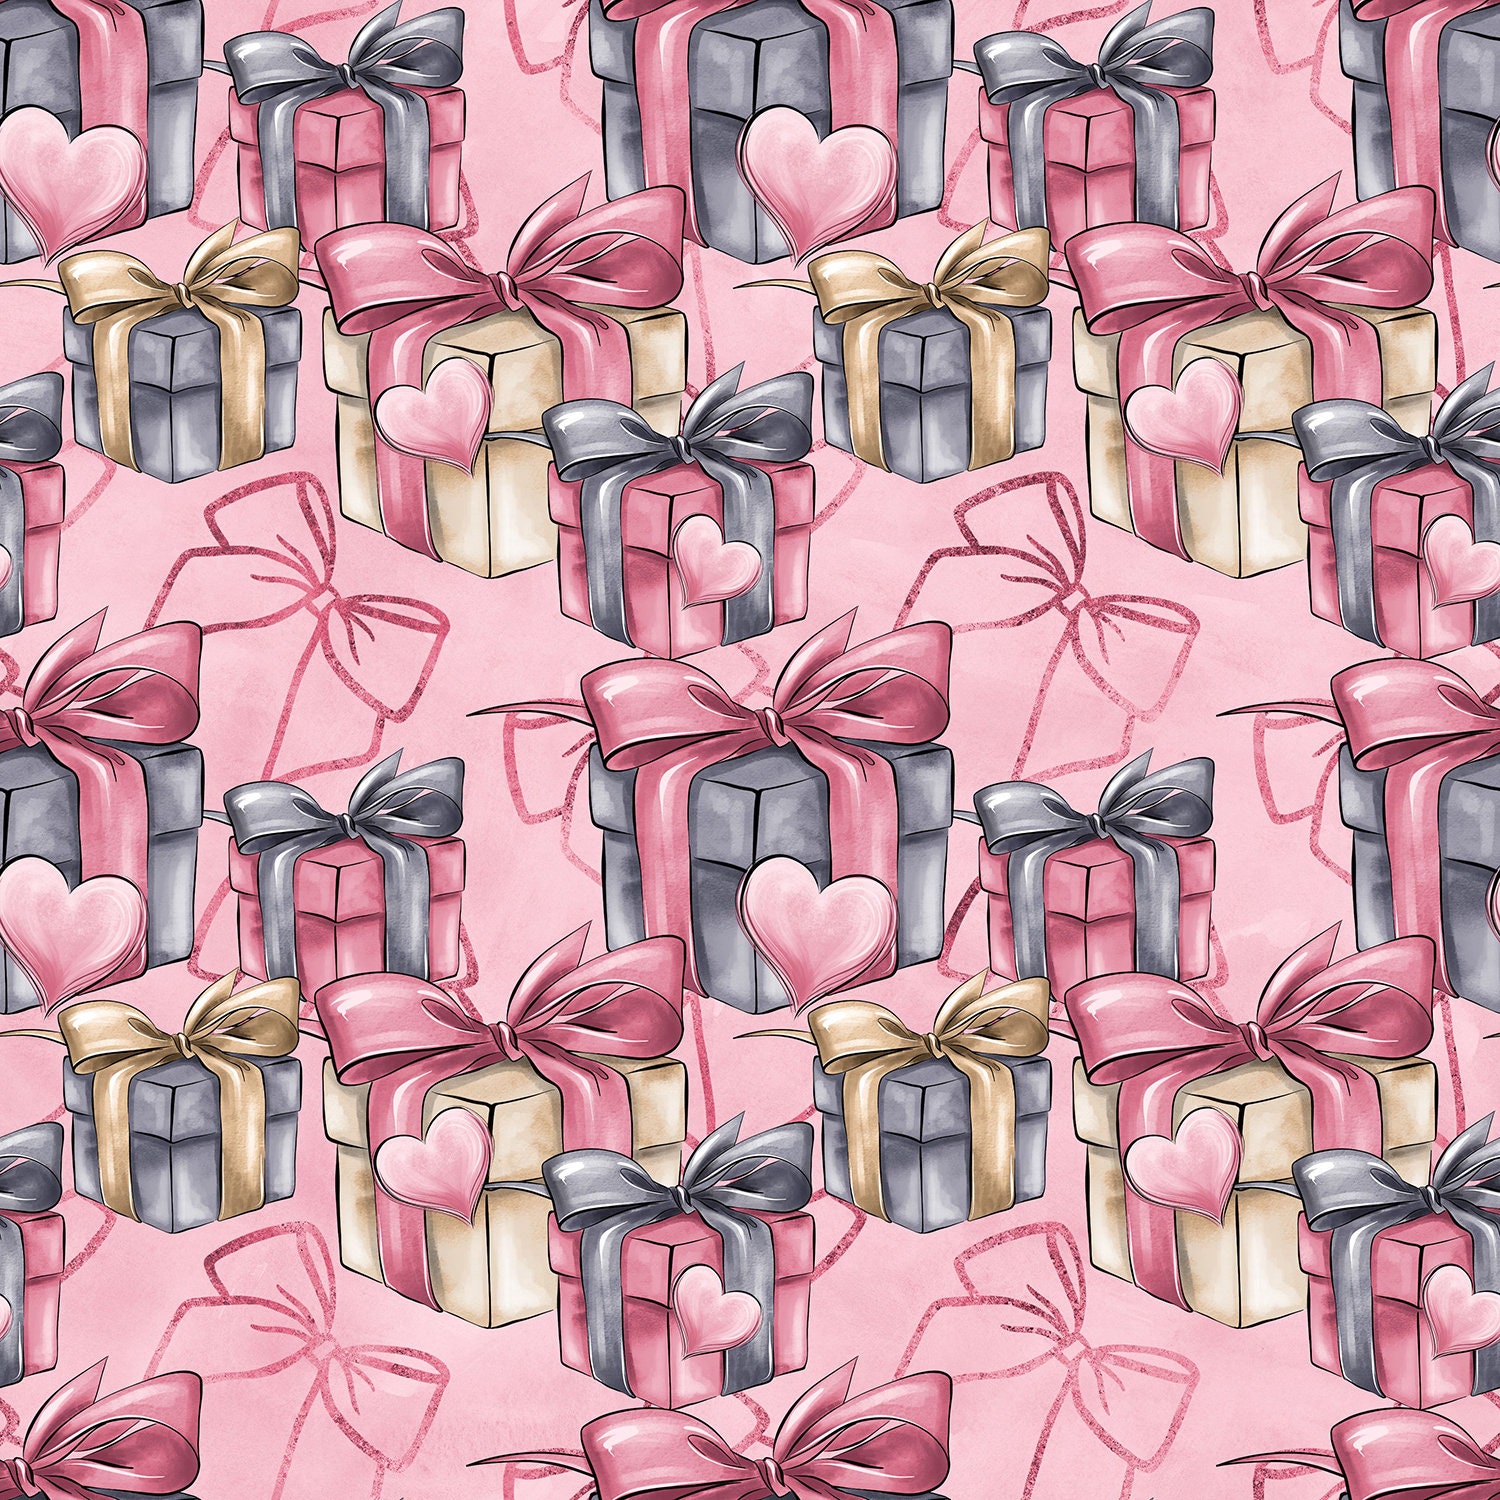 Kitsch Valentine's burgundy love clouds Cotton Fabric – Dana Du Design